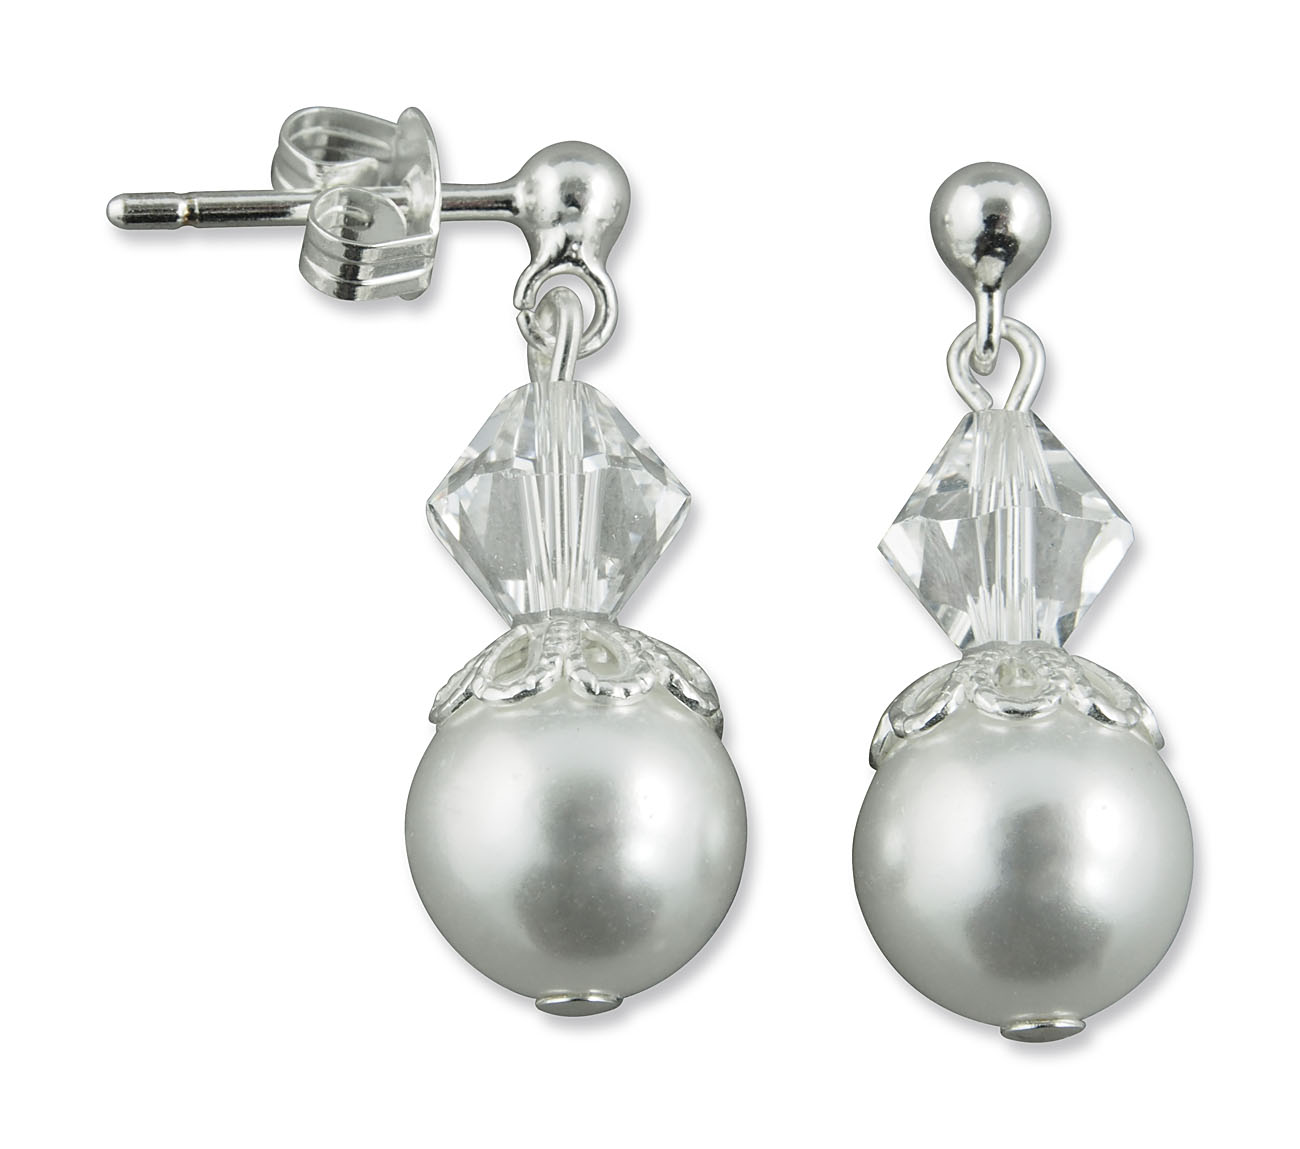 Bild von Swarovski Perlen Ohrringe 925 Silber